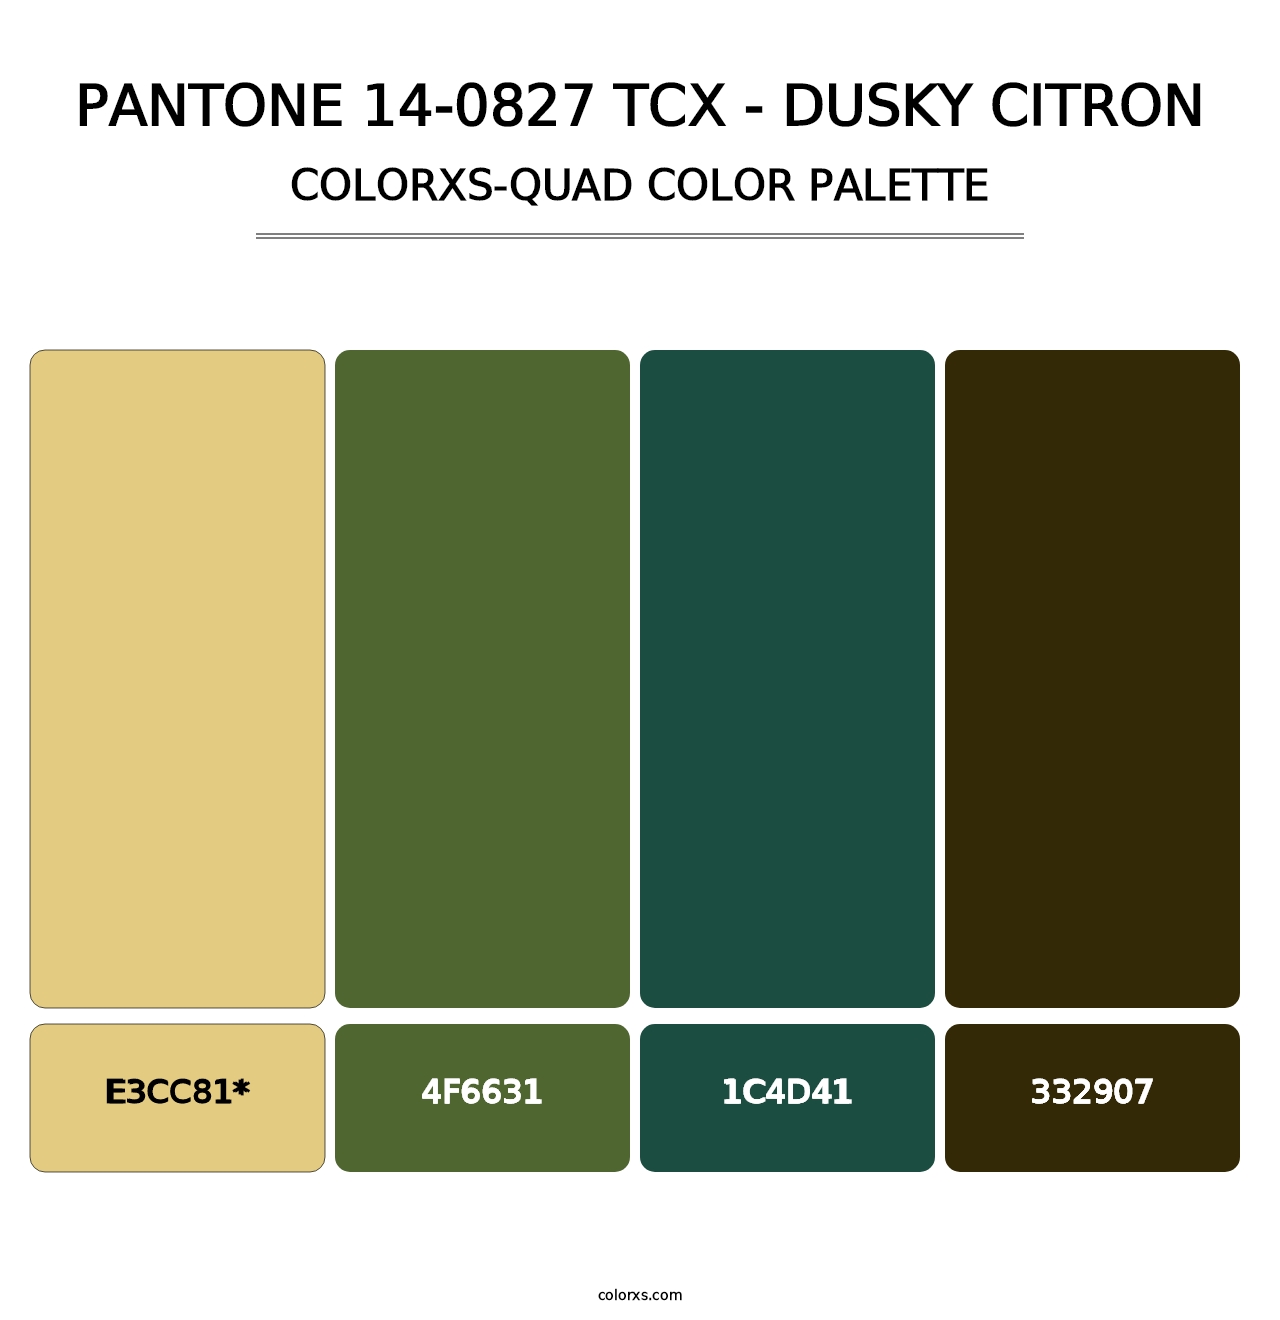 PANTONE 14-0827 TCX - Dusky Citron - Colorxs Quad Palette